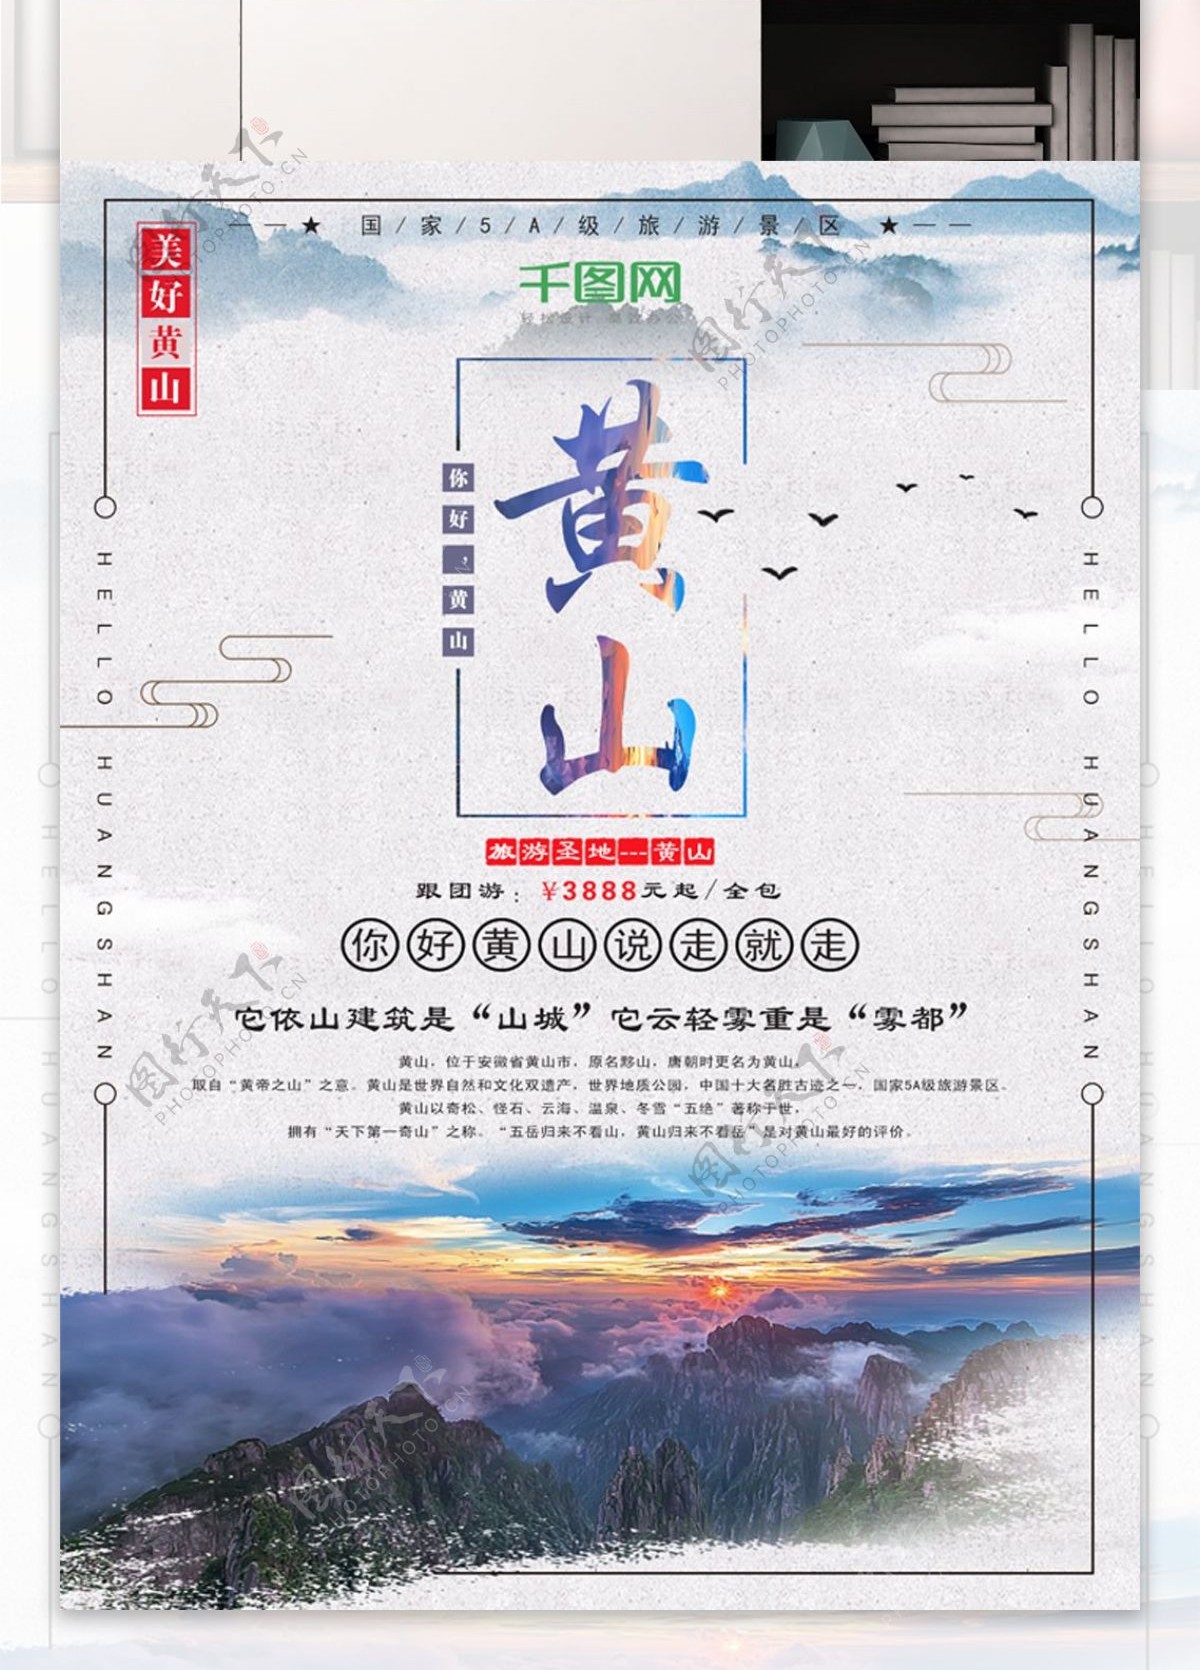 简约黄山风景旅游旅行团海报